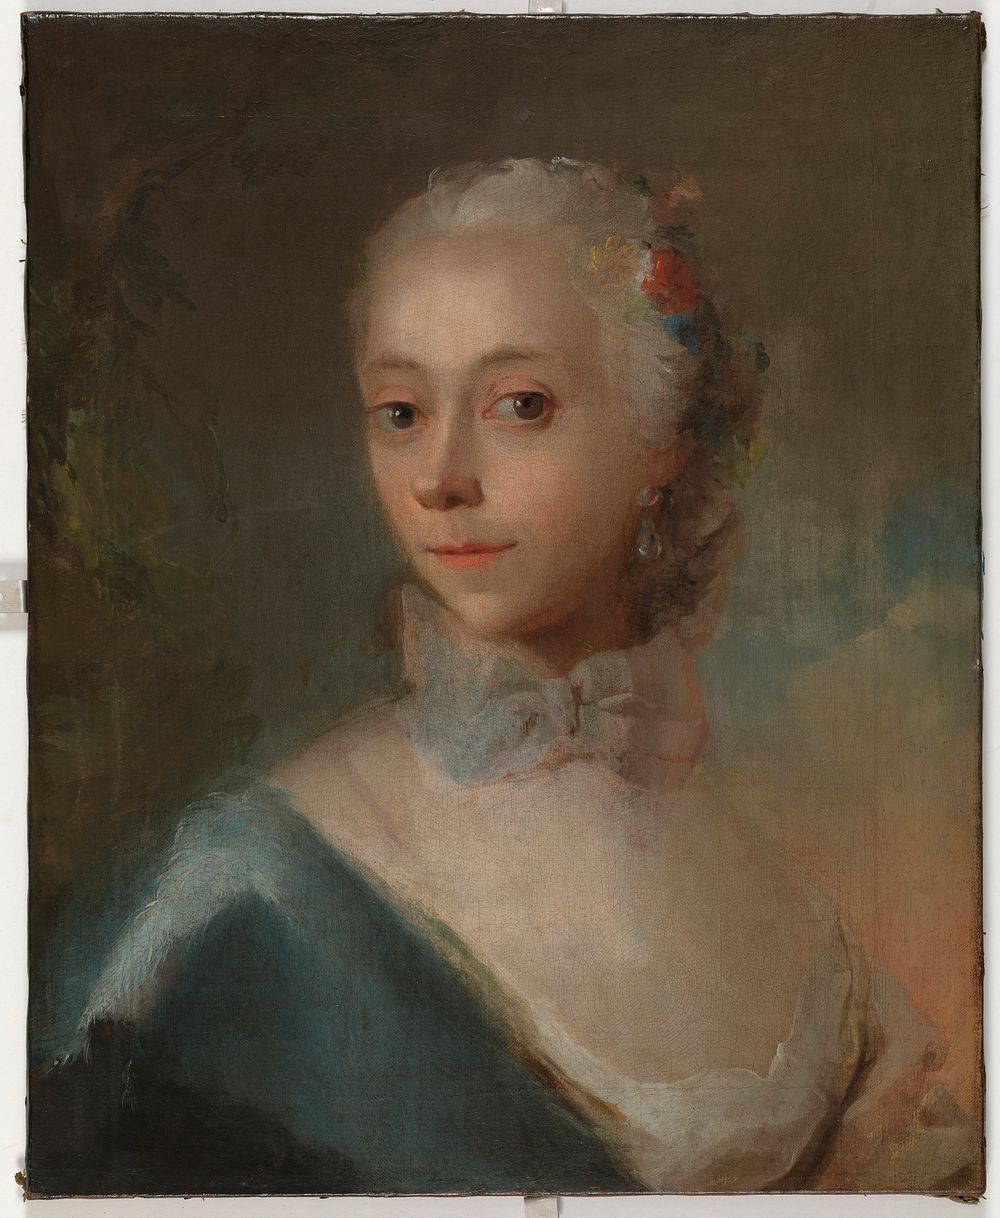 Lady's portrait by C. G. Pilo